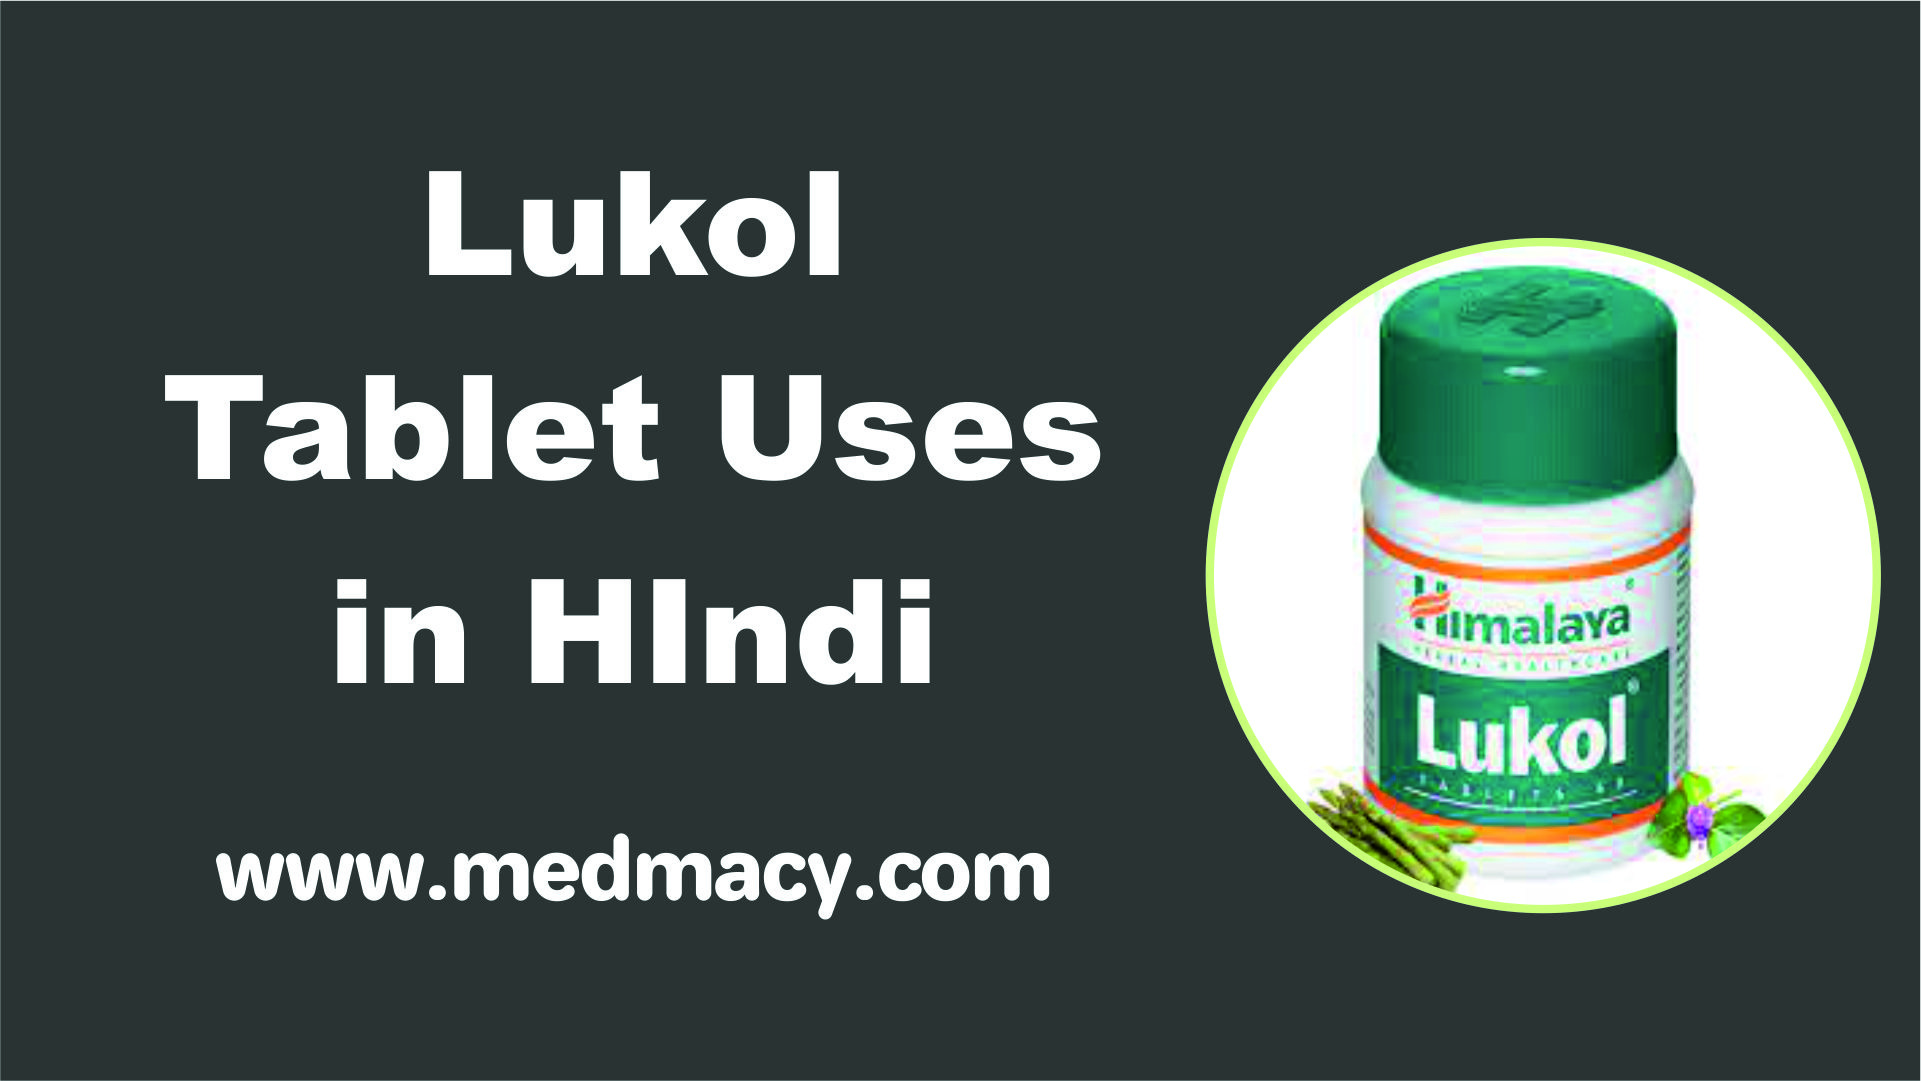 Lukol tablet uses in hindi